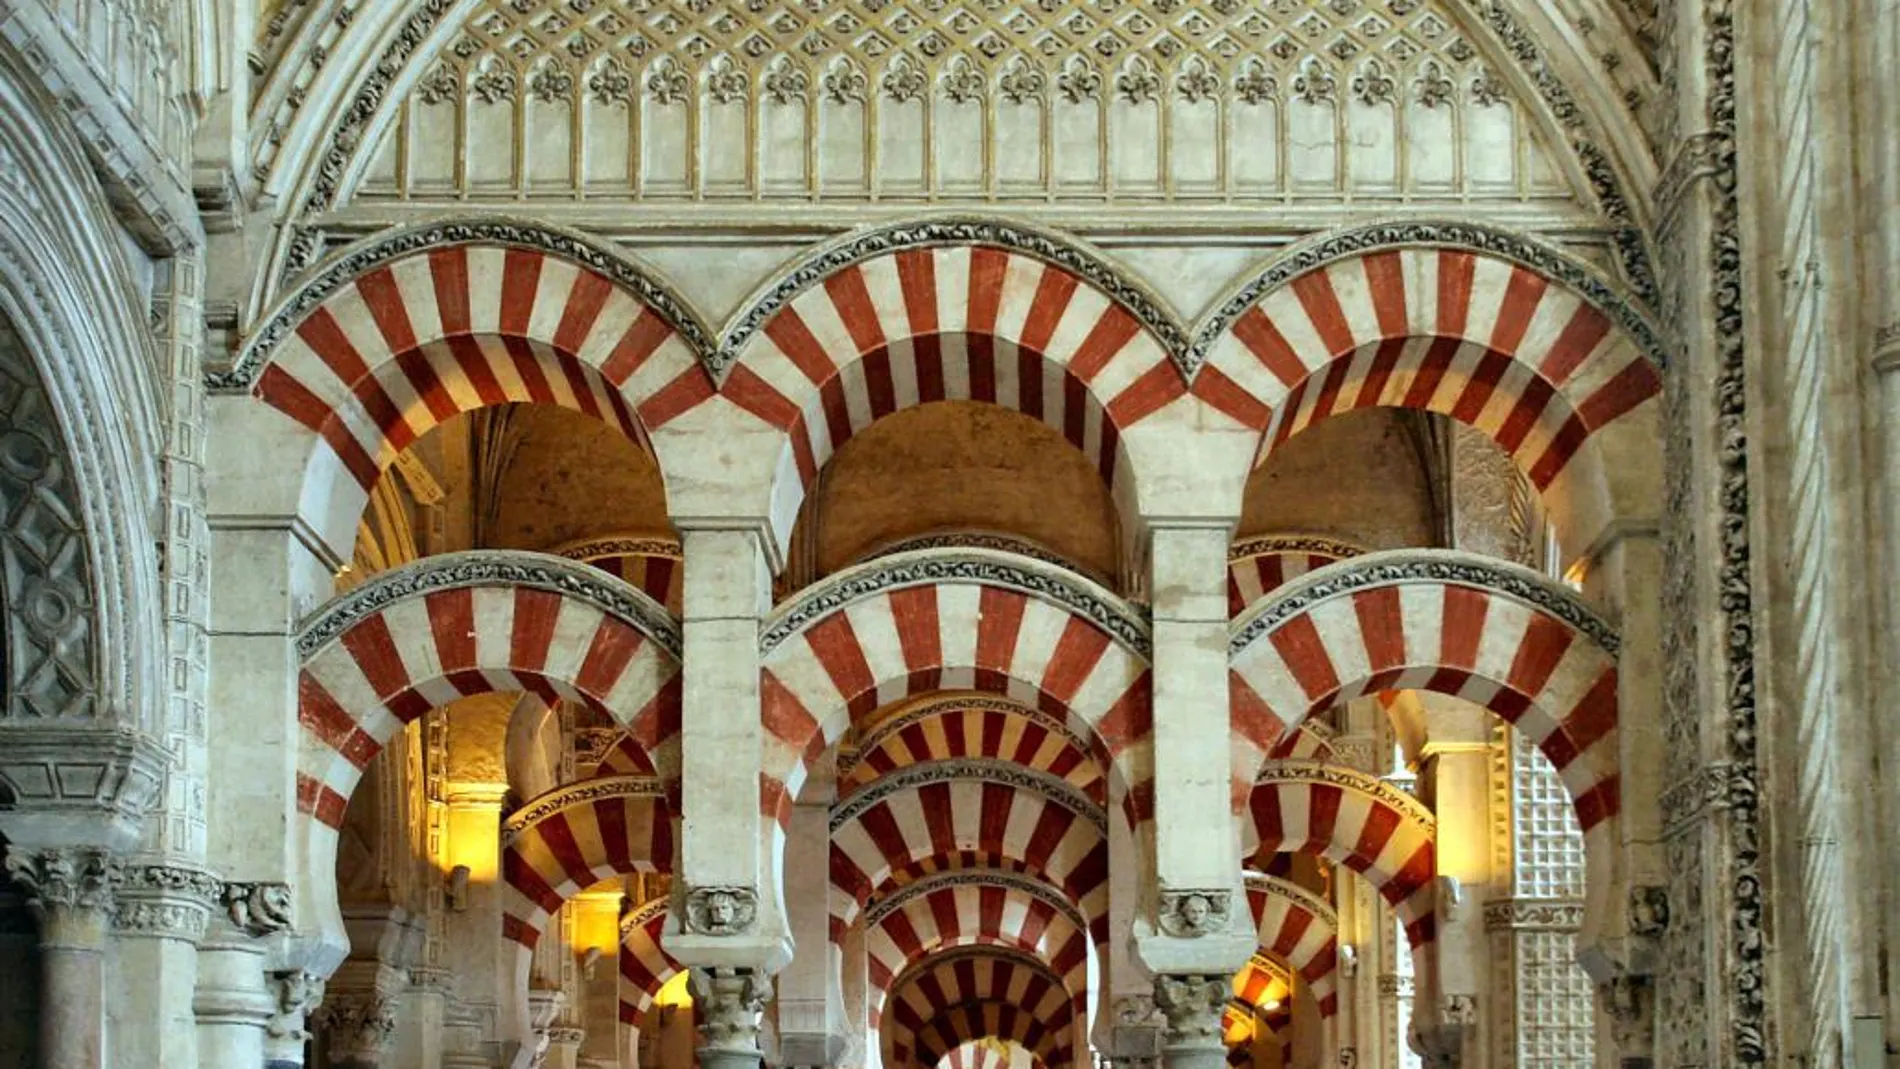 La Justicia ampara el registro de la Mezquita de Córdoba a nombre de la Iglesia